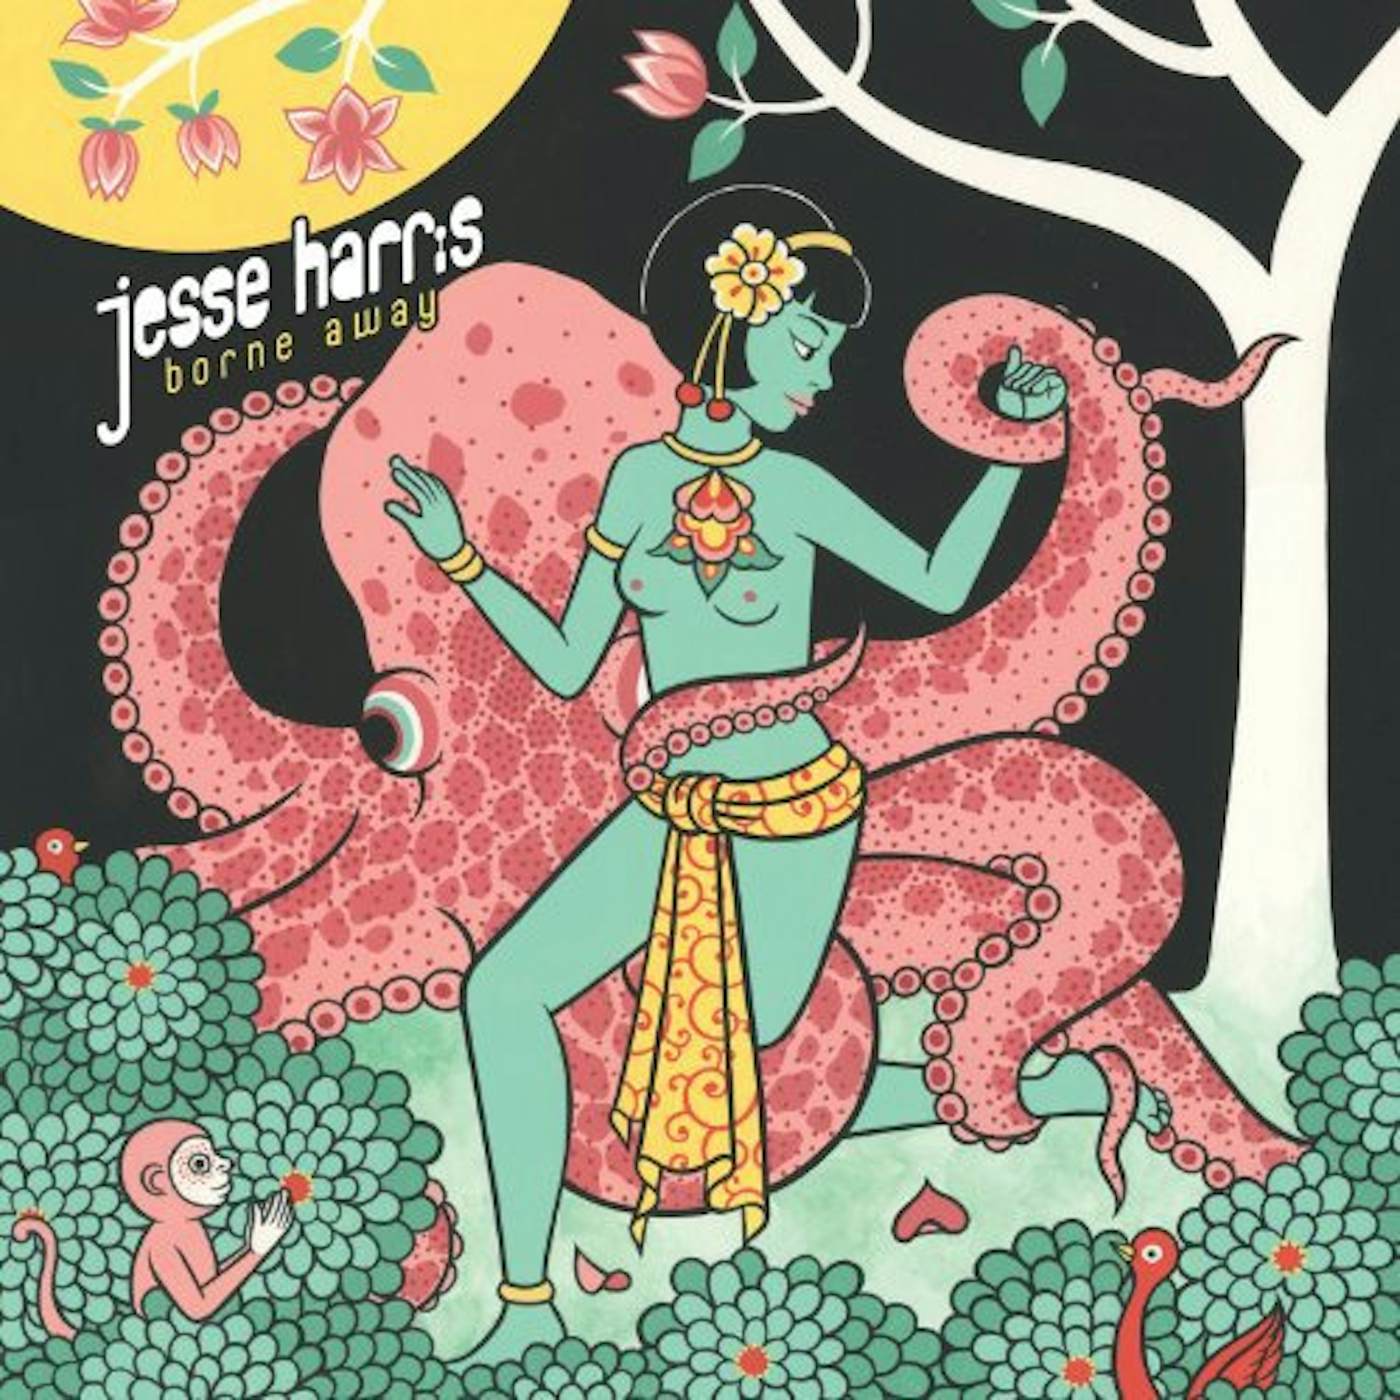 Jesse Harris Borne Away Vinyl Record